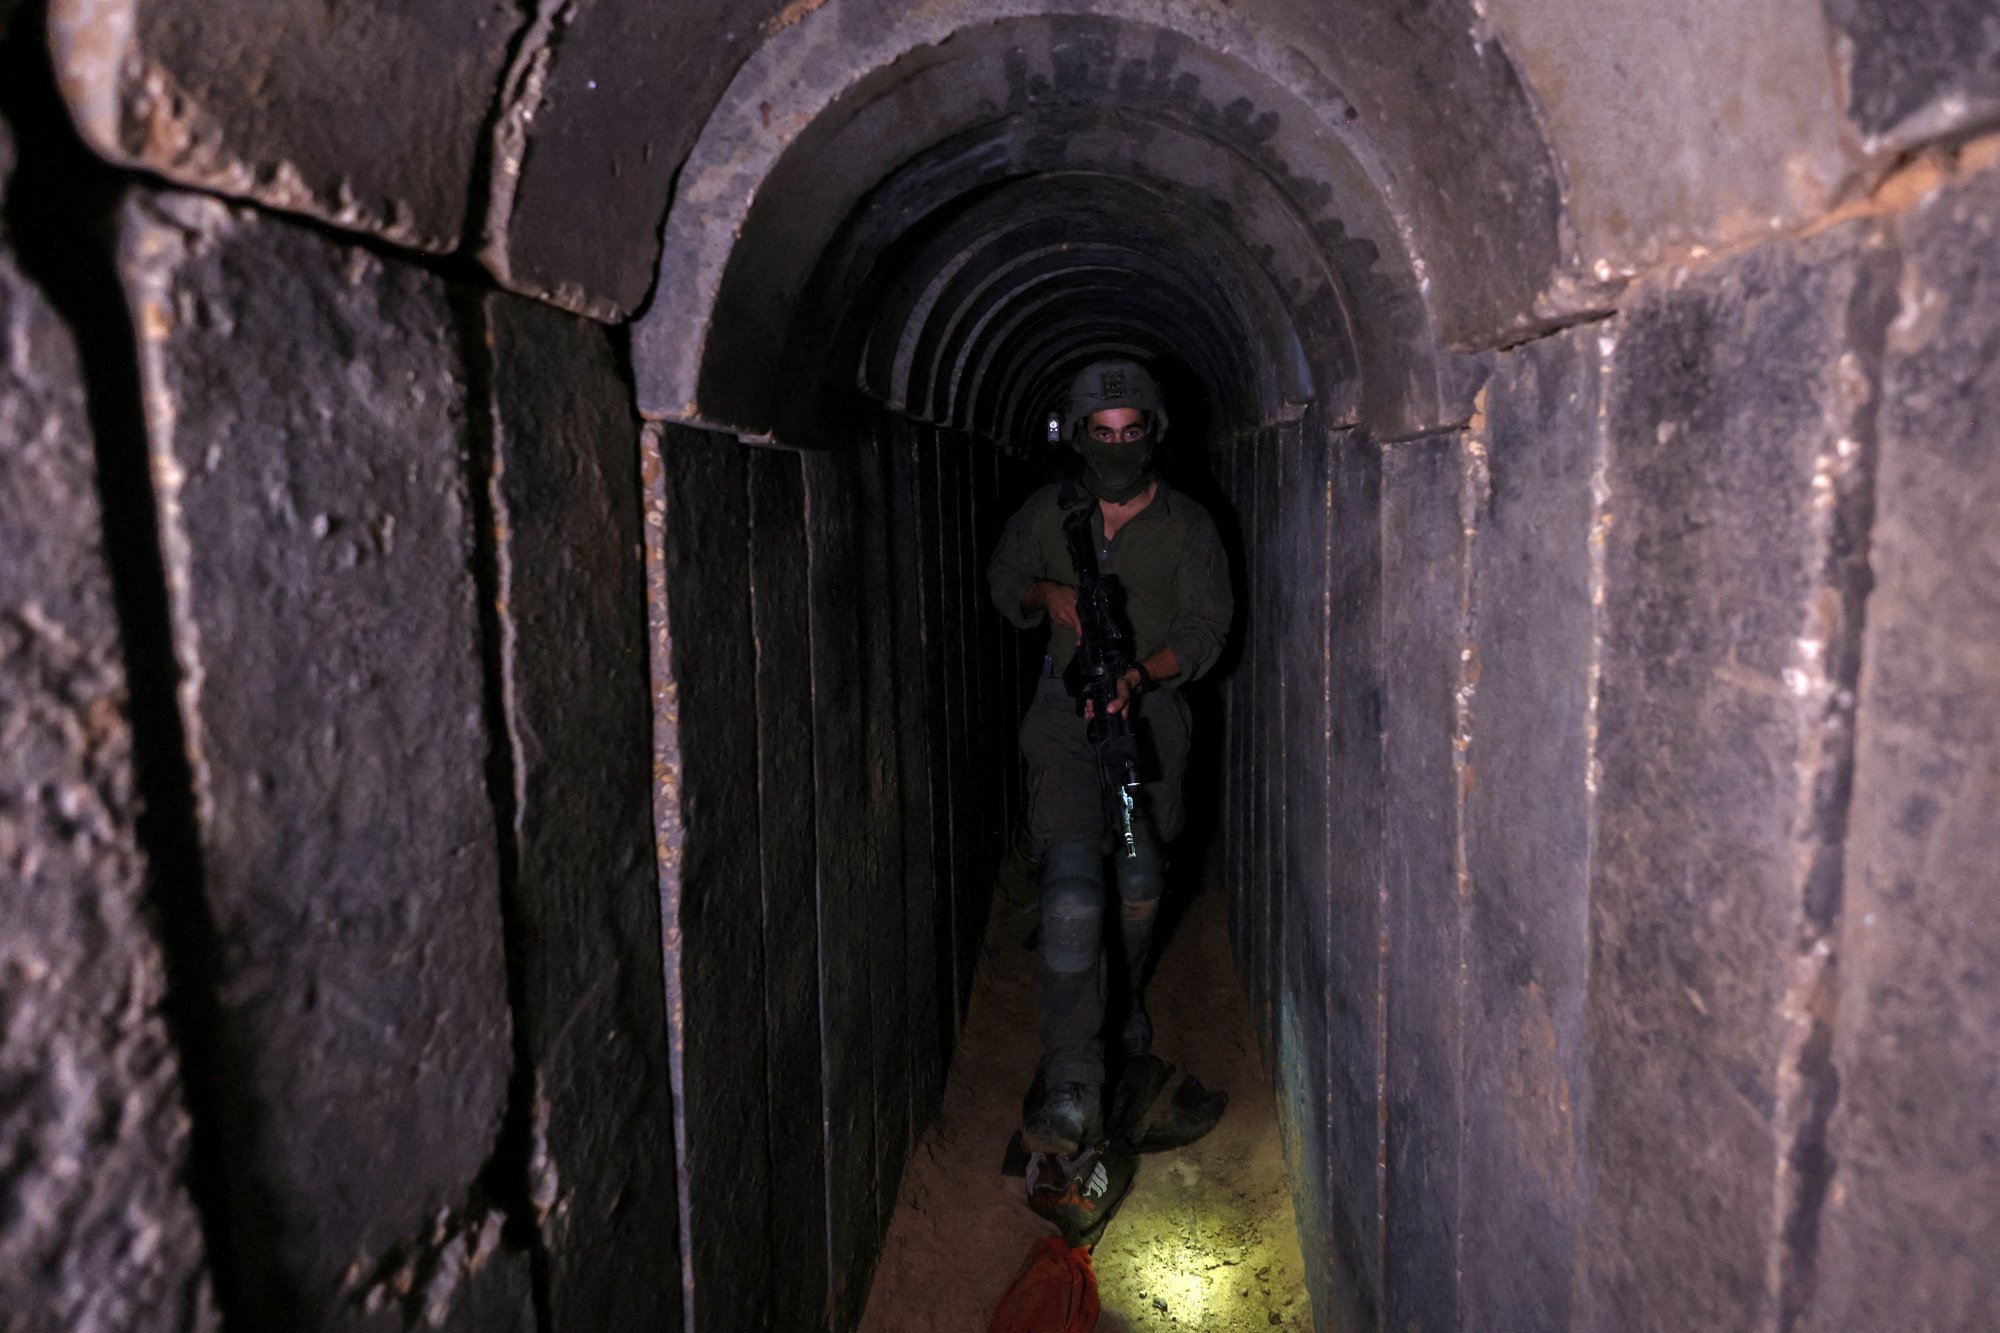 Σε εφαρμογή το σχέδιο του Ισράηλ - Γεμίζει τα τούνελ της Χαμάς με θαλασσινό νερό